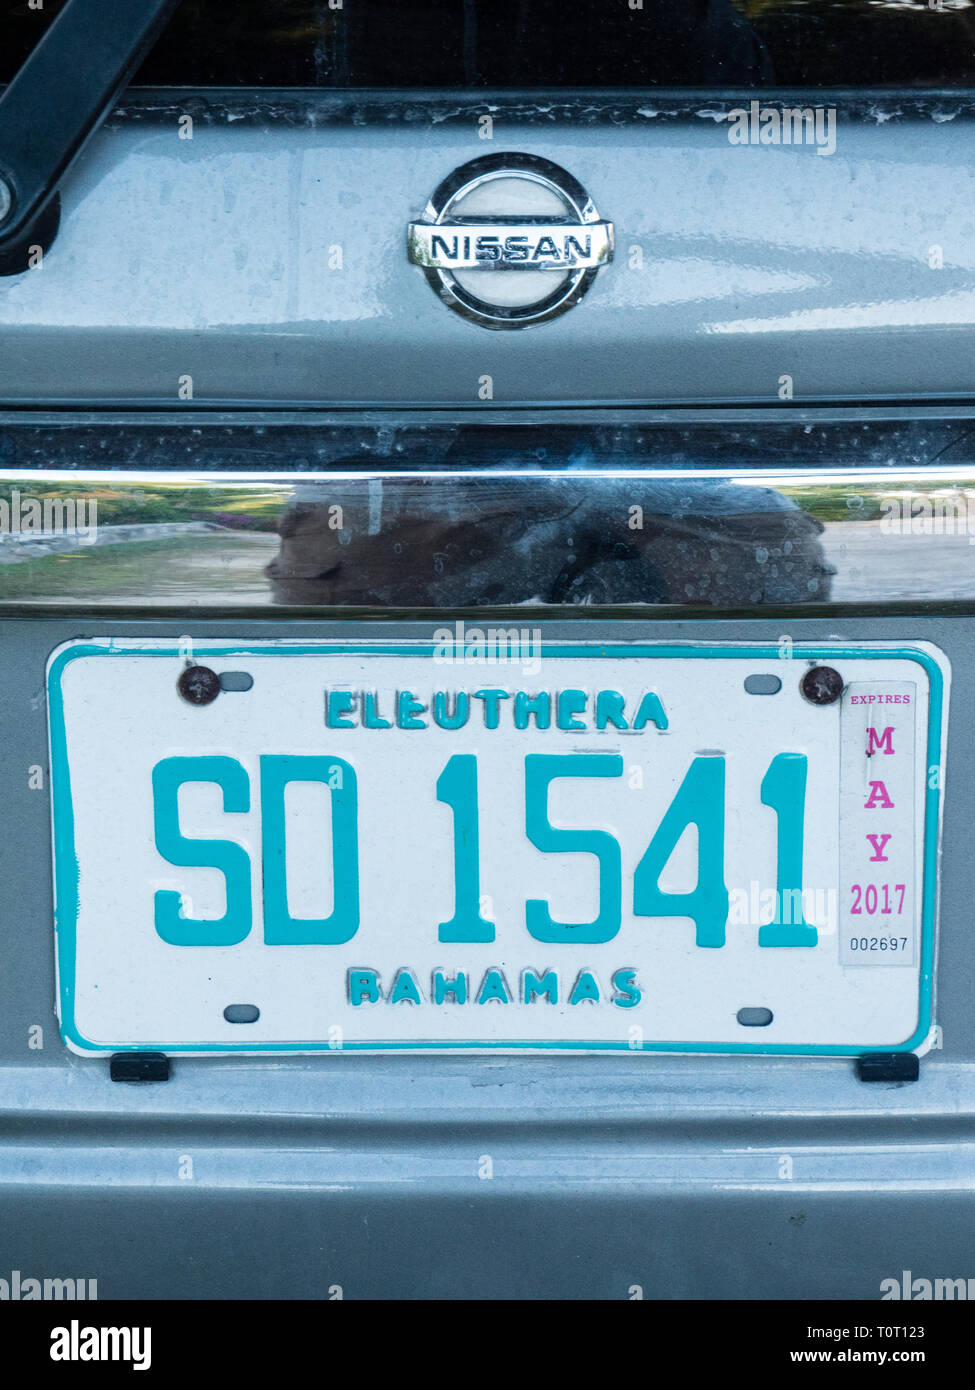 Eleuthera alquiler de la placa con el número de imágenes de viajes, Gobernadores Harbour Eleuthera Island, Las Bahamas, El Caribe. Foto de stock